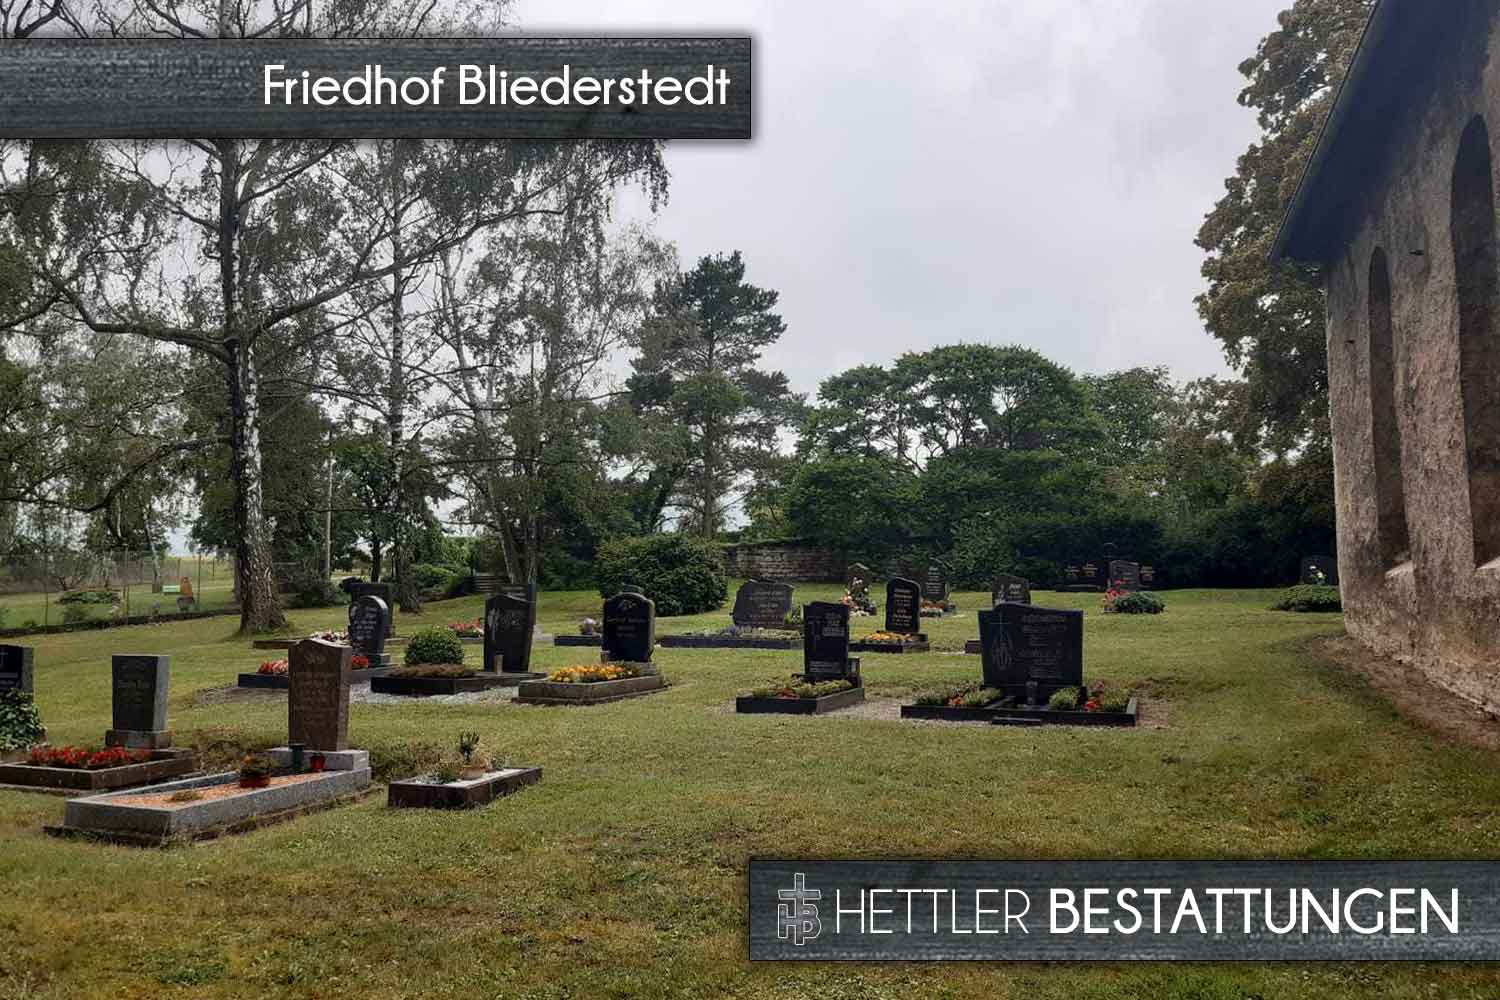 Friedhof in Bliederstedt. Ihr Ort des Abschieds mit Hettler Bestattungen.